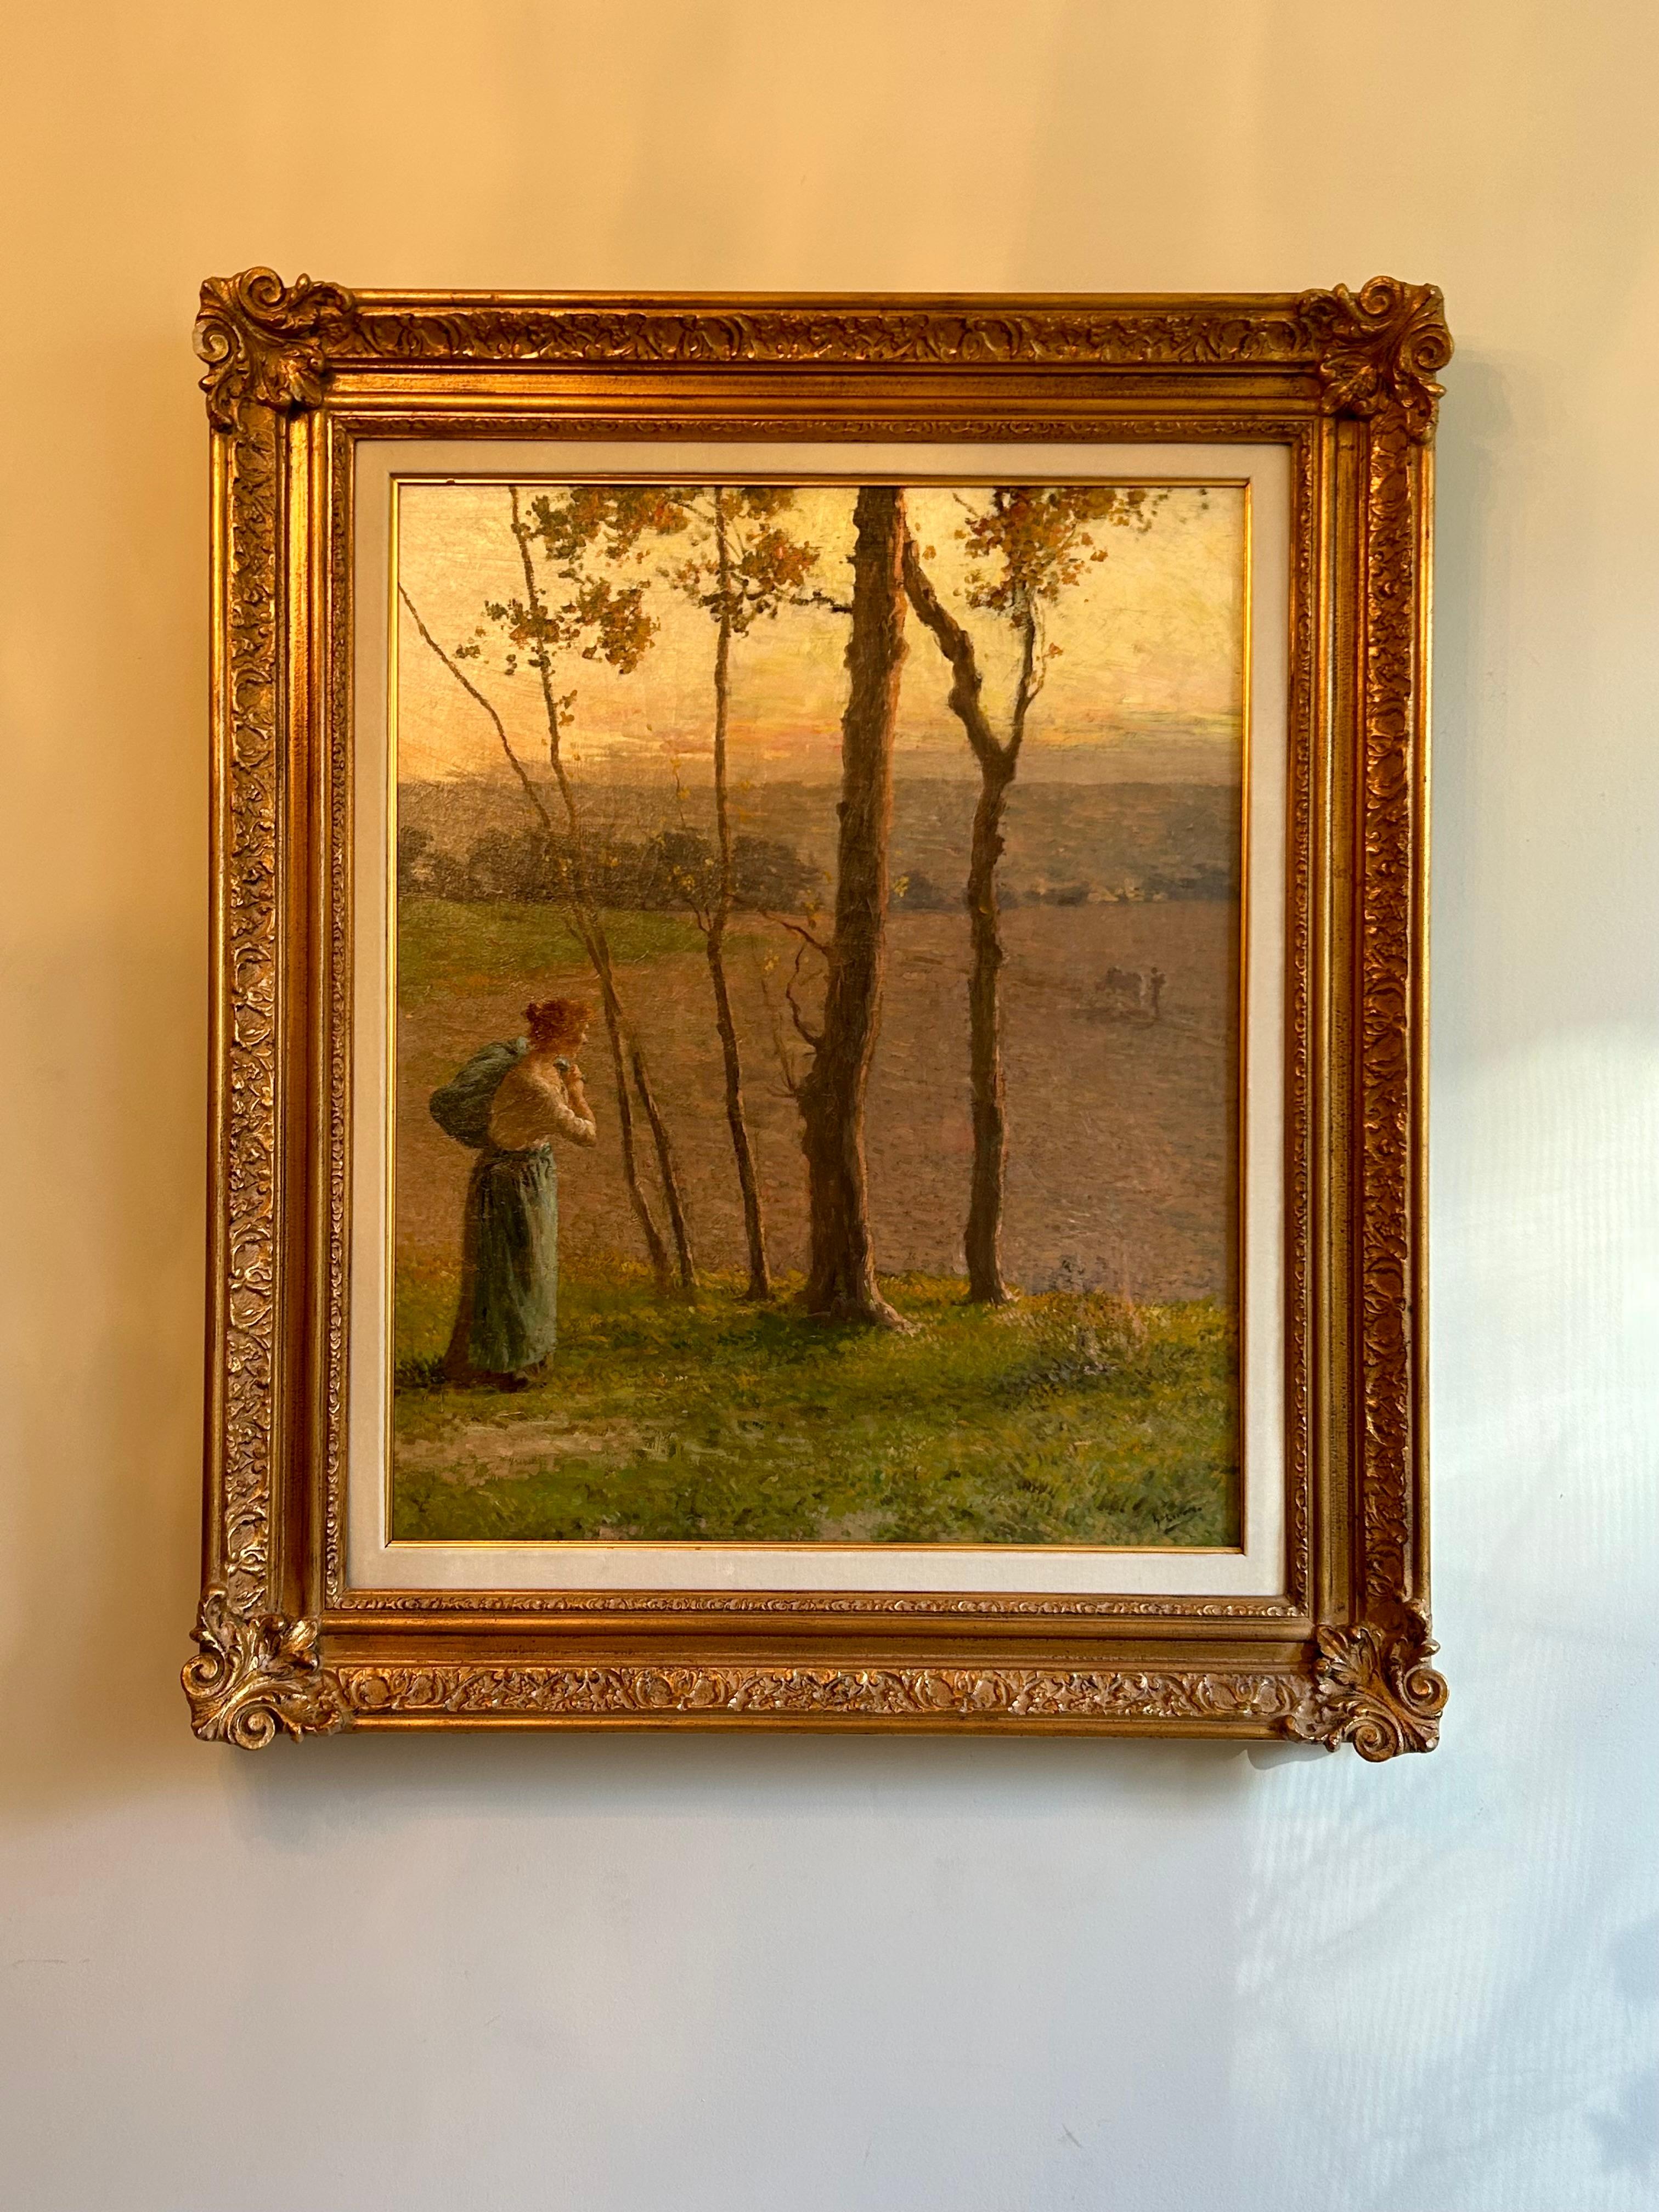 Un beau tableau du peintre américain André Gisson, dans un important cadre doré. Gisson était réputé pour ses peintures de style impressionniste et est largement collectionné. Cette œuvre associe sa passion pour les paysages à la figure solitaire